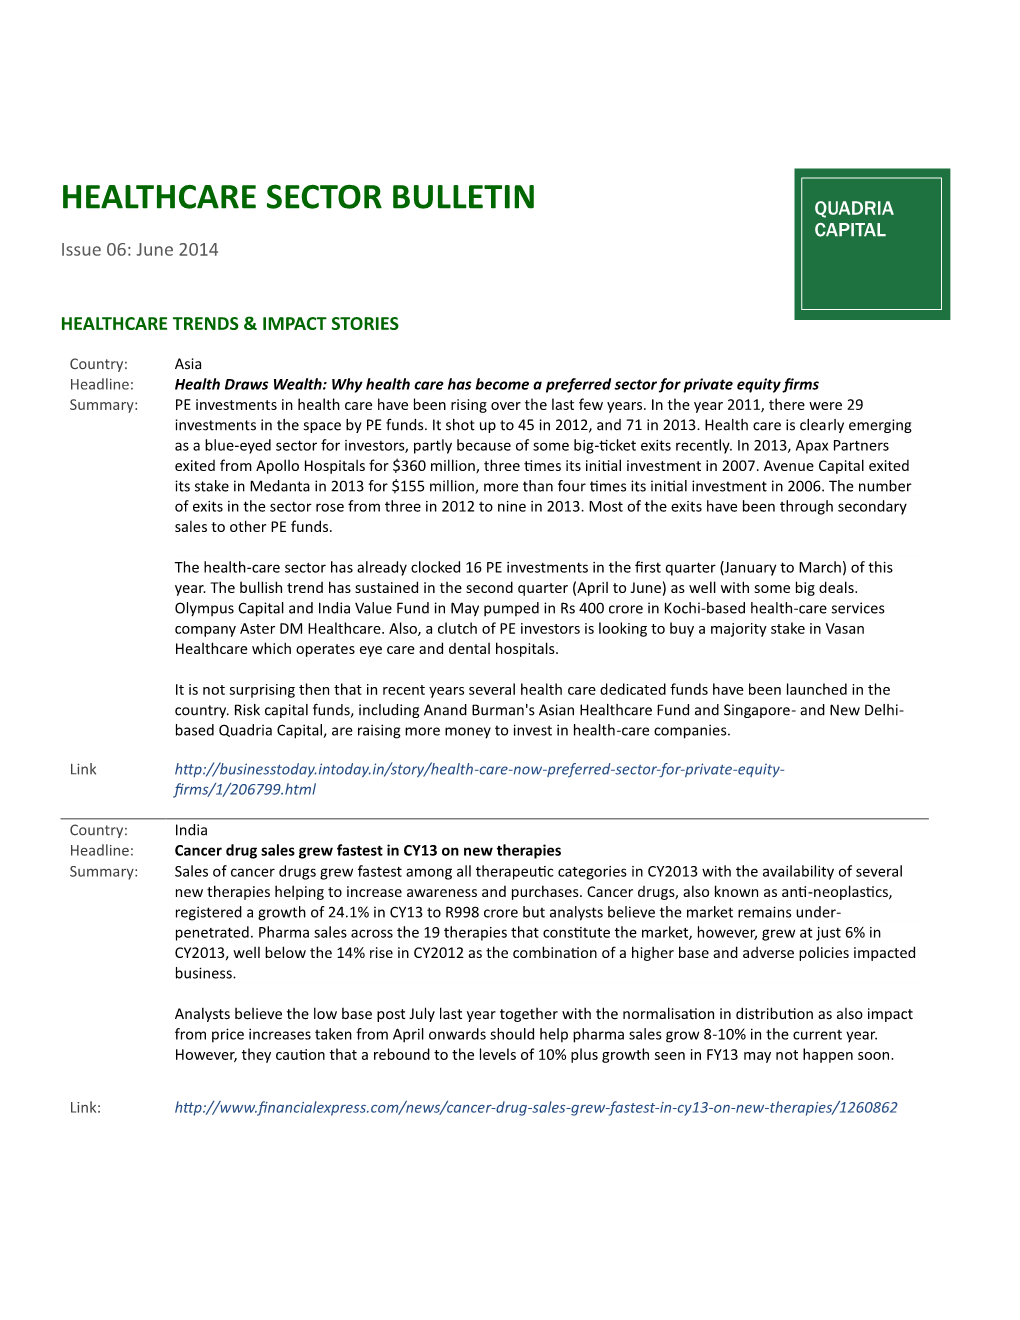 HEALTHCARE SECTOR BULLETIN QUADRIA CAPITAL Issue 06: June 2014